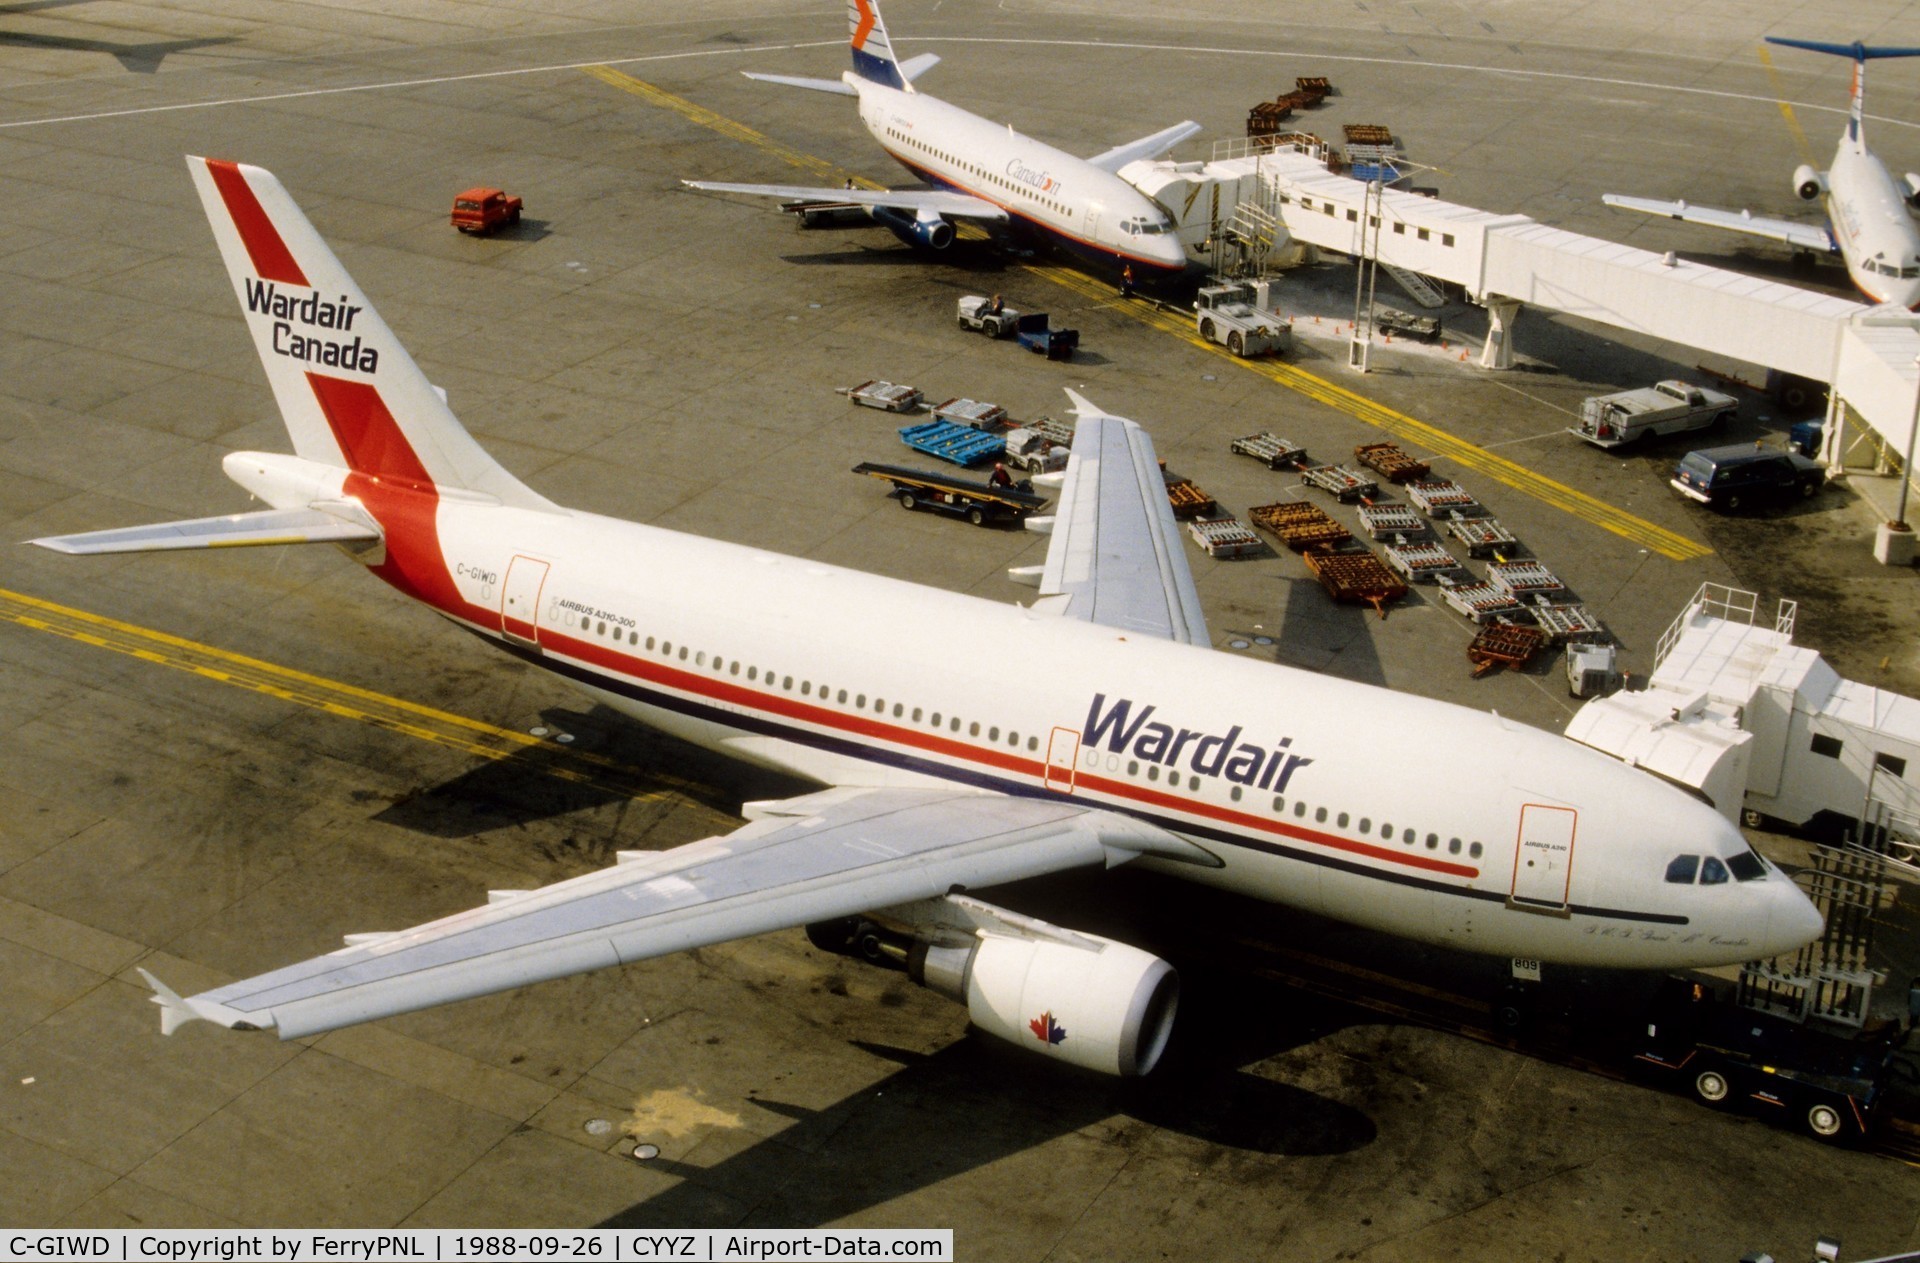 C-GIWD, 1988 Airbus A310-304 C/N 472, Wardair A310 at its gate